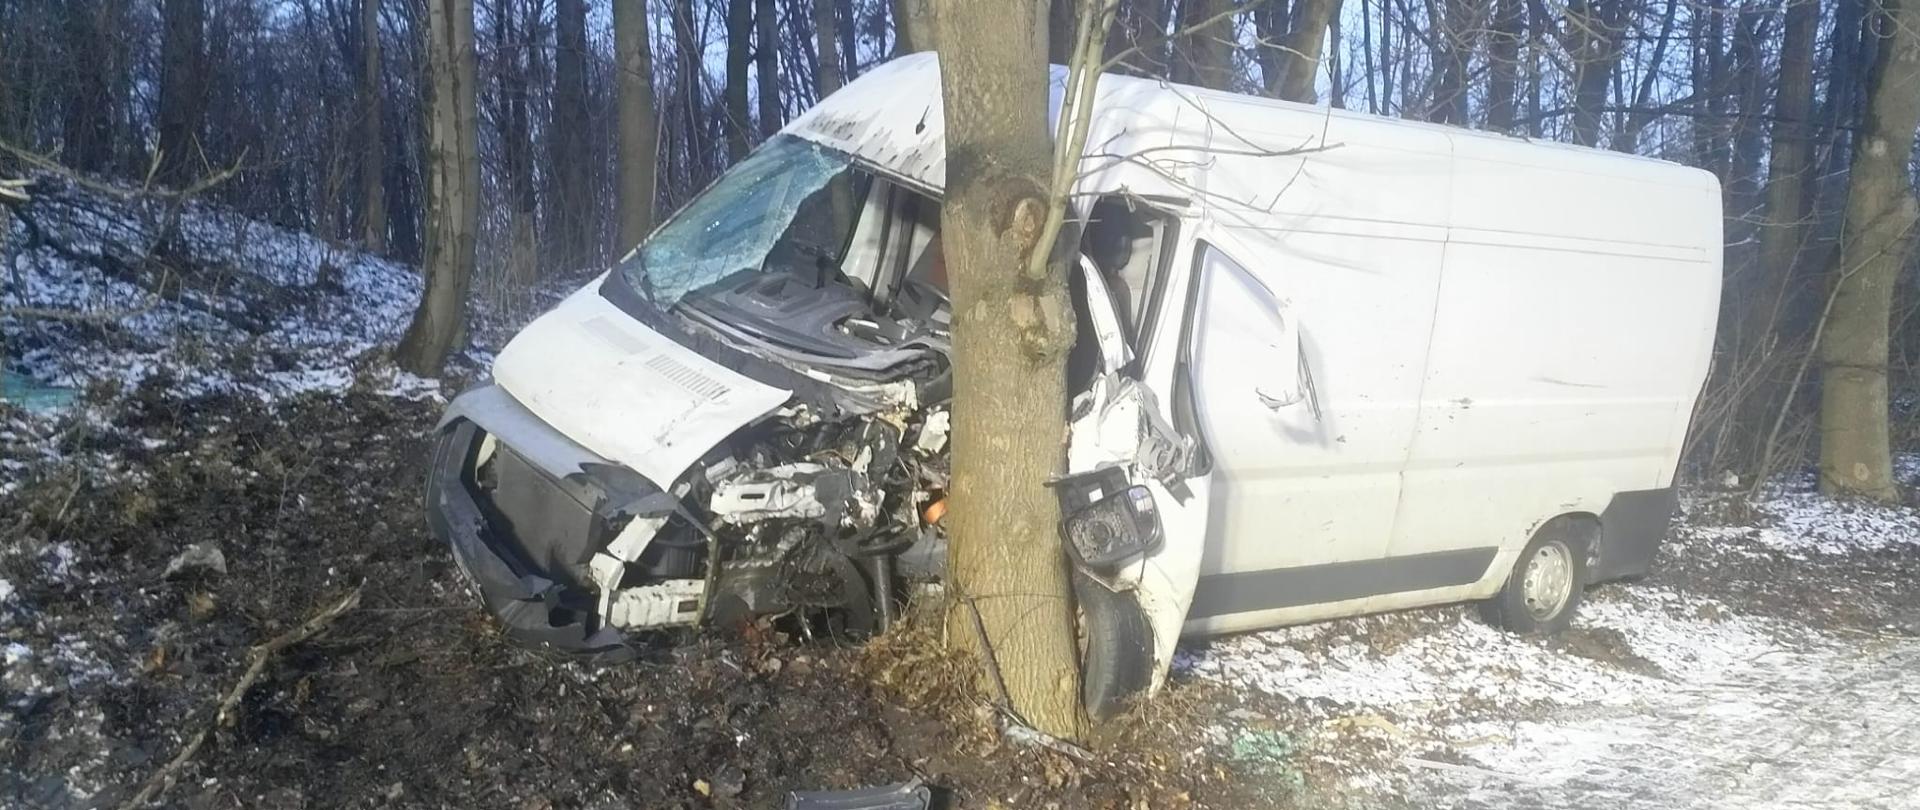 Zdjęcie przedstawia samochód dostawczy, który uderzył w drzewo